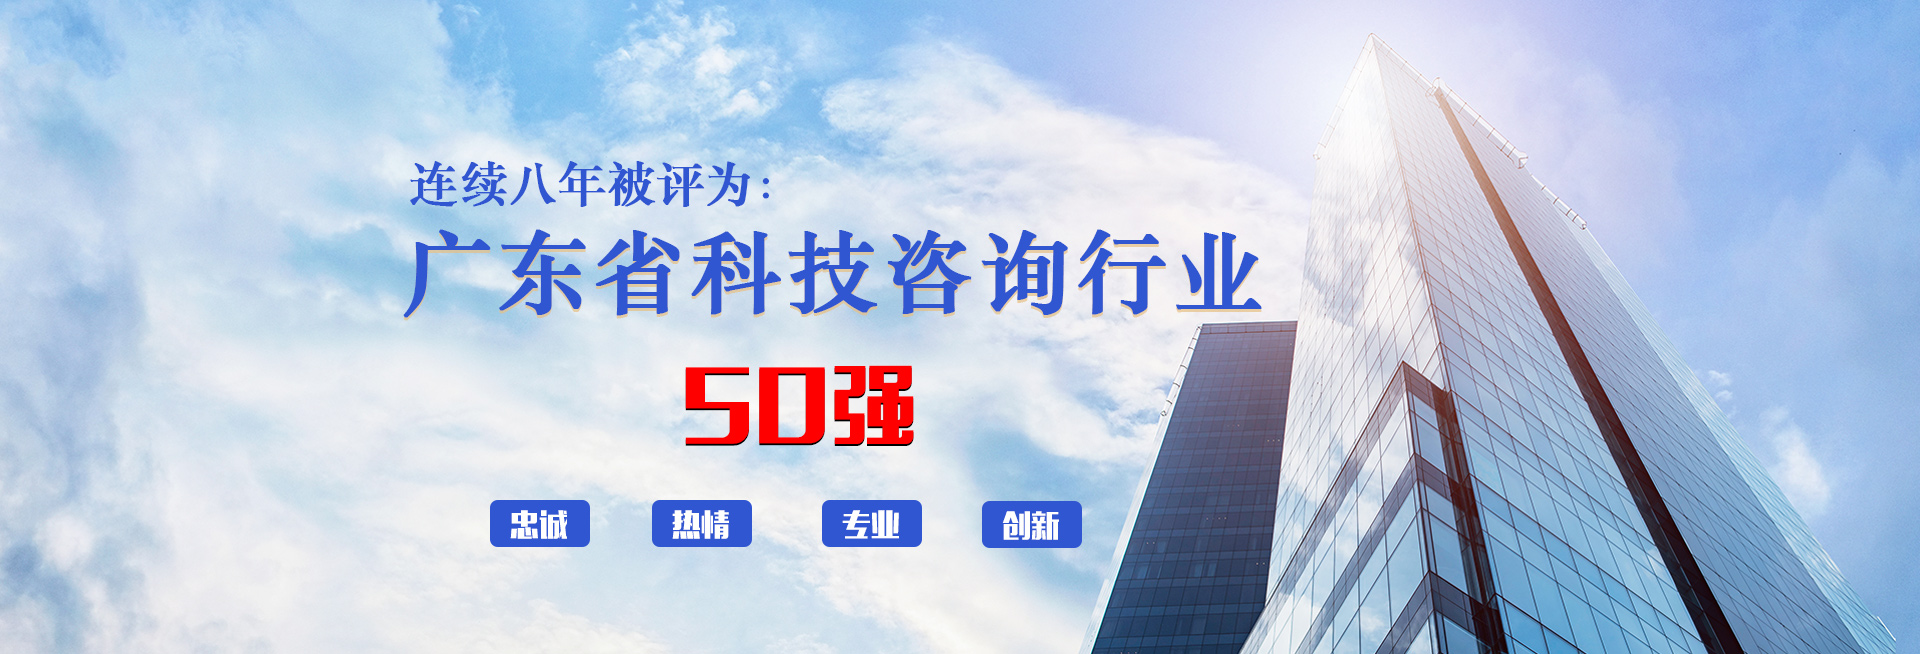 科泰集团连续八年被评为广东省科技咨询行业50强